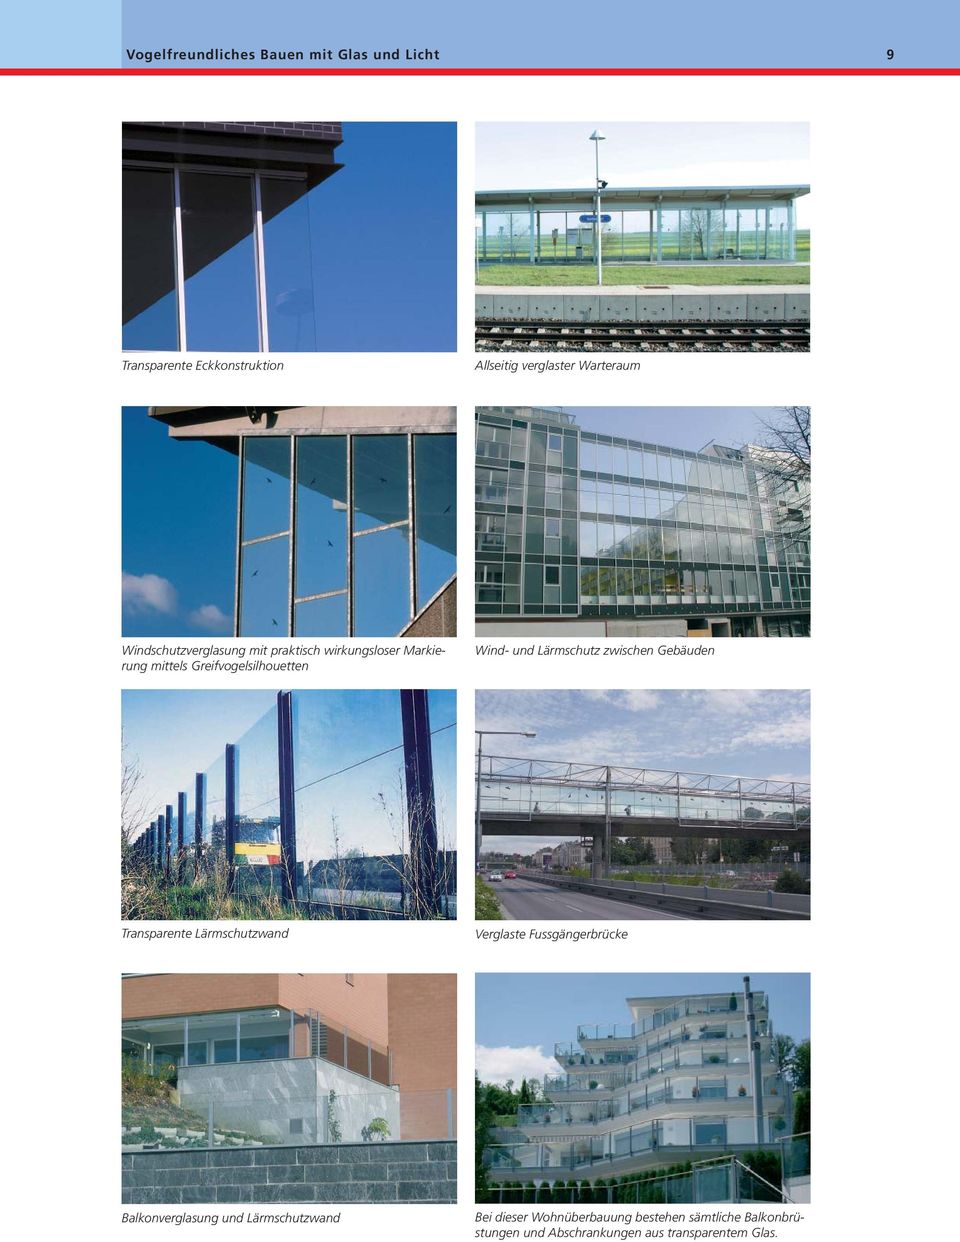 Lärmschutz zwischen Gebäuden Transparente Lärmschutzwand Verglaste Fussgängerbrücke Balkonverglasung und